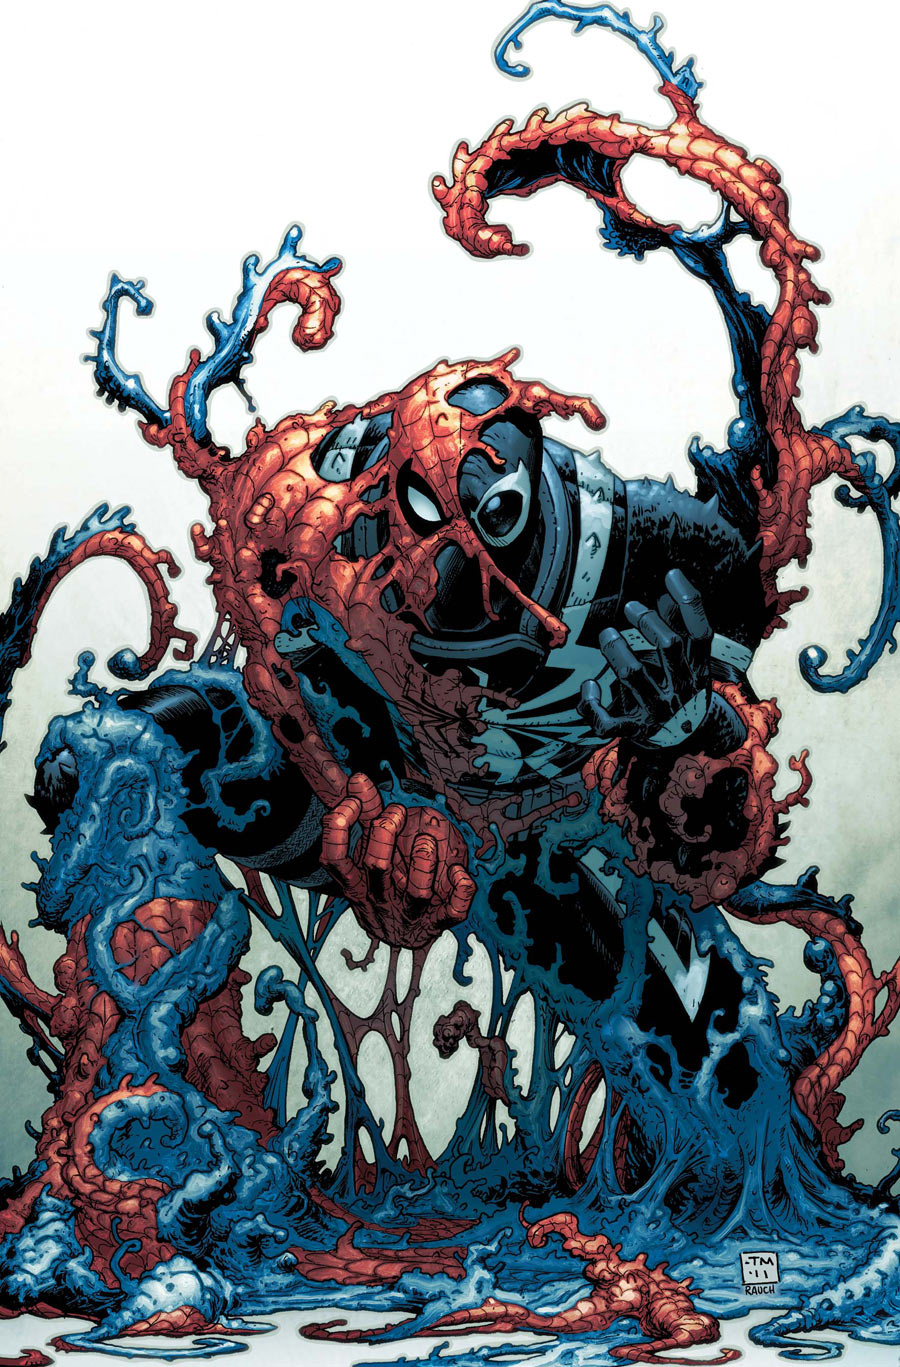 "Venom" - komiksowy antybohater trafi na ekrany